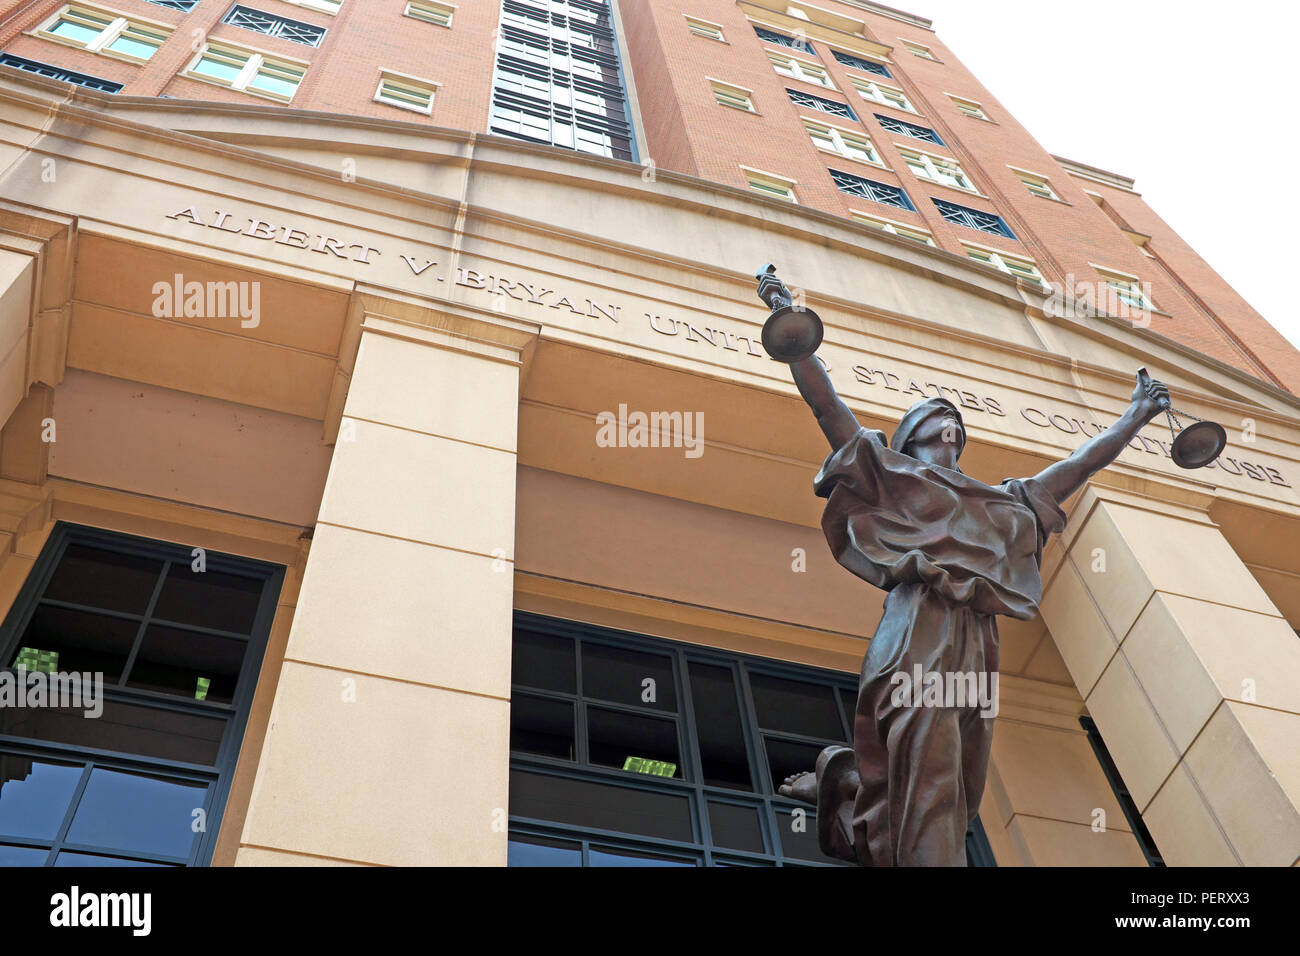 Situé dans la place du palais de justice, Alexandria, VA, USA, l'Albert c. United States Courthouse possède une statue de la justice aveugle au-dessus de son entrée. Banque D'Images